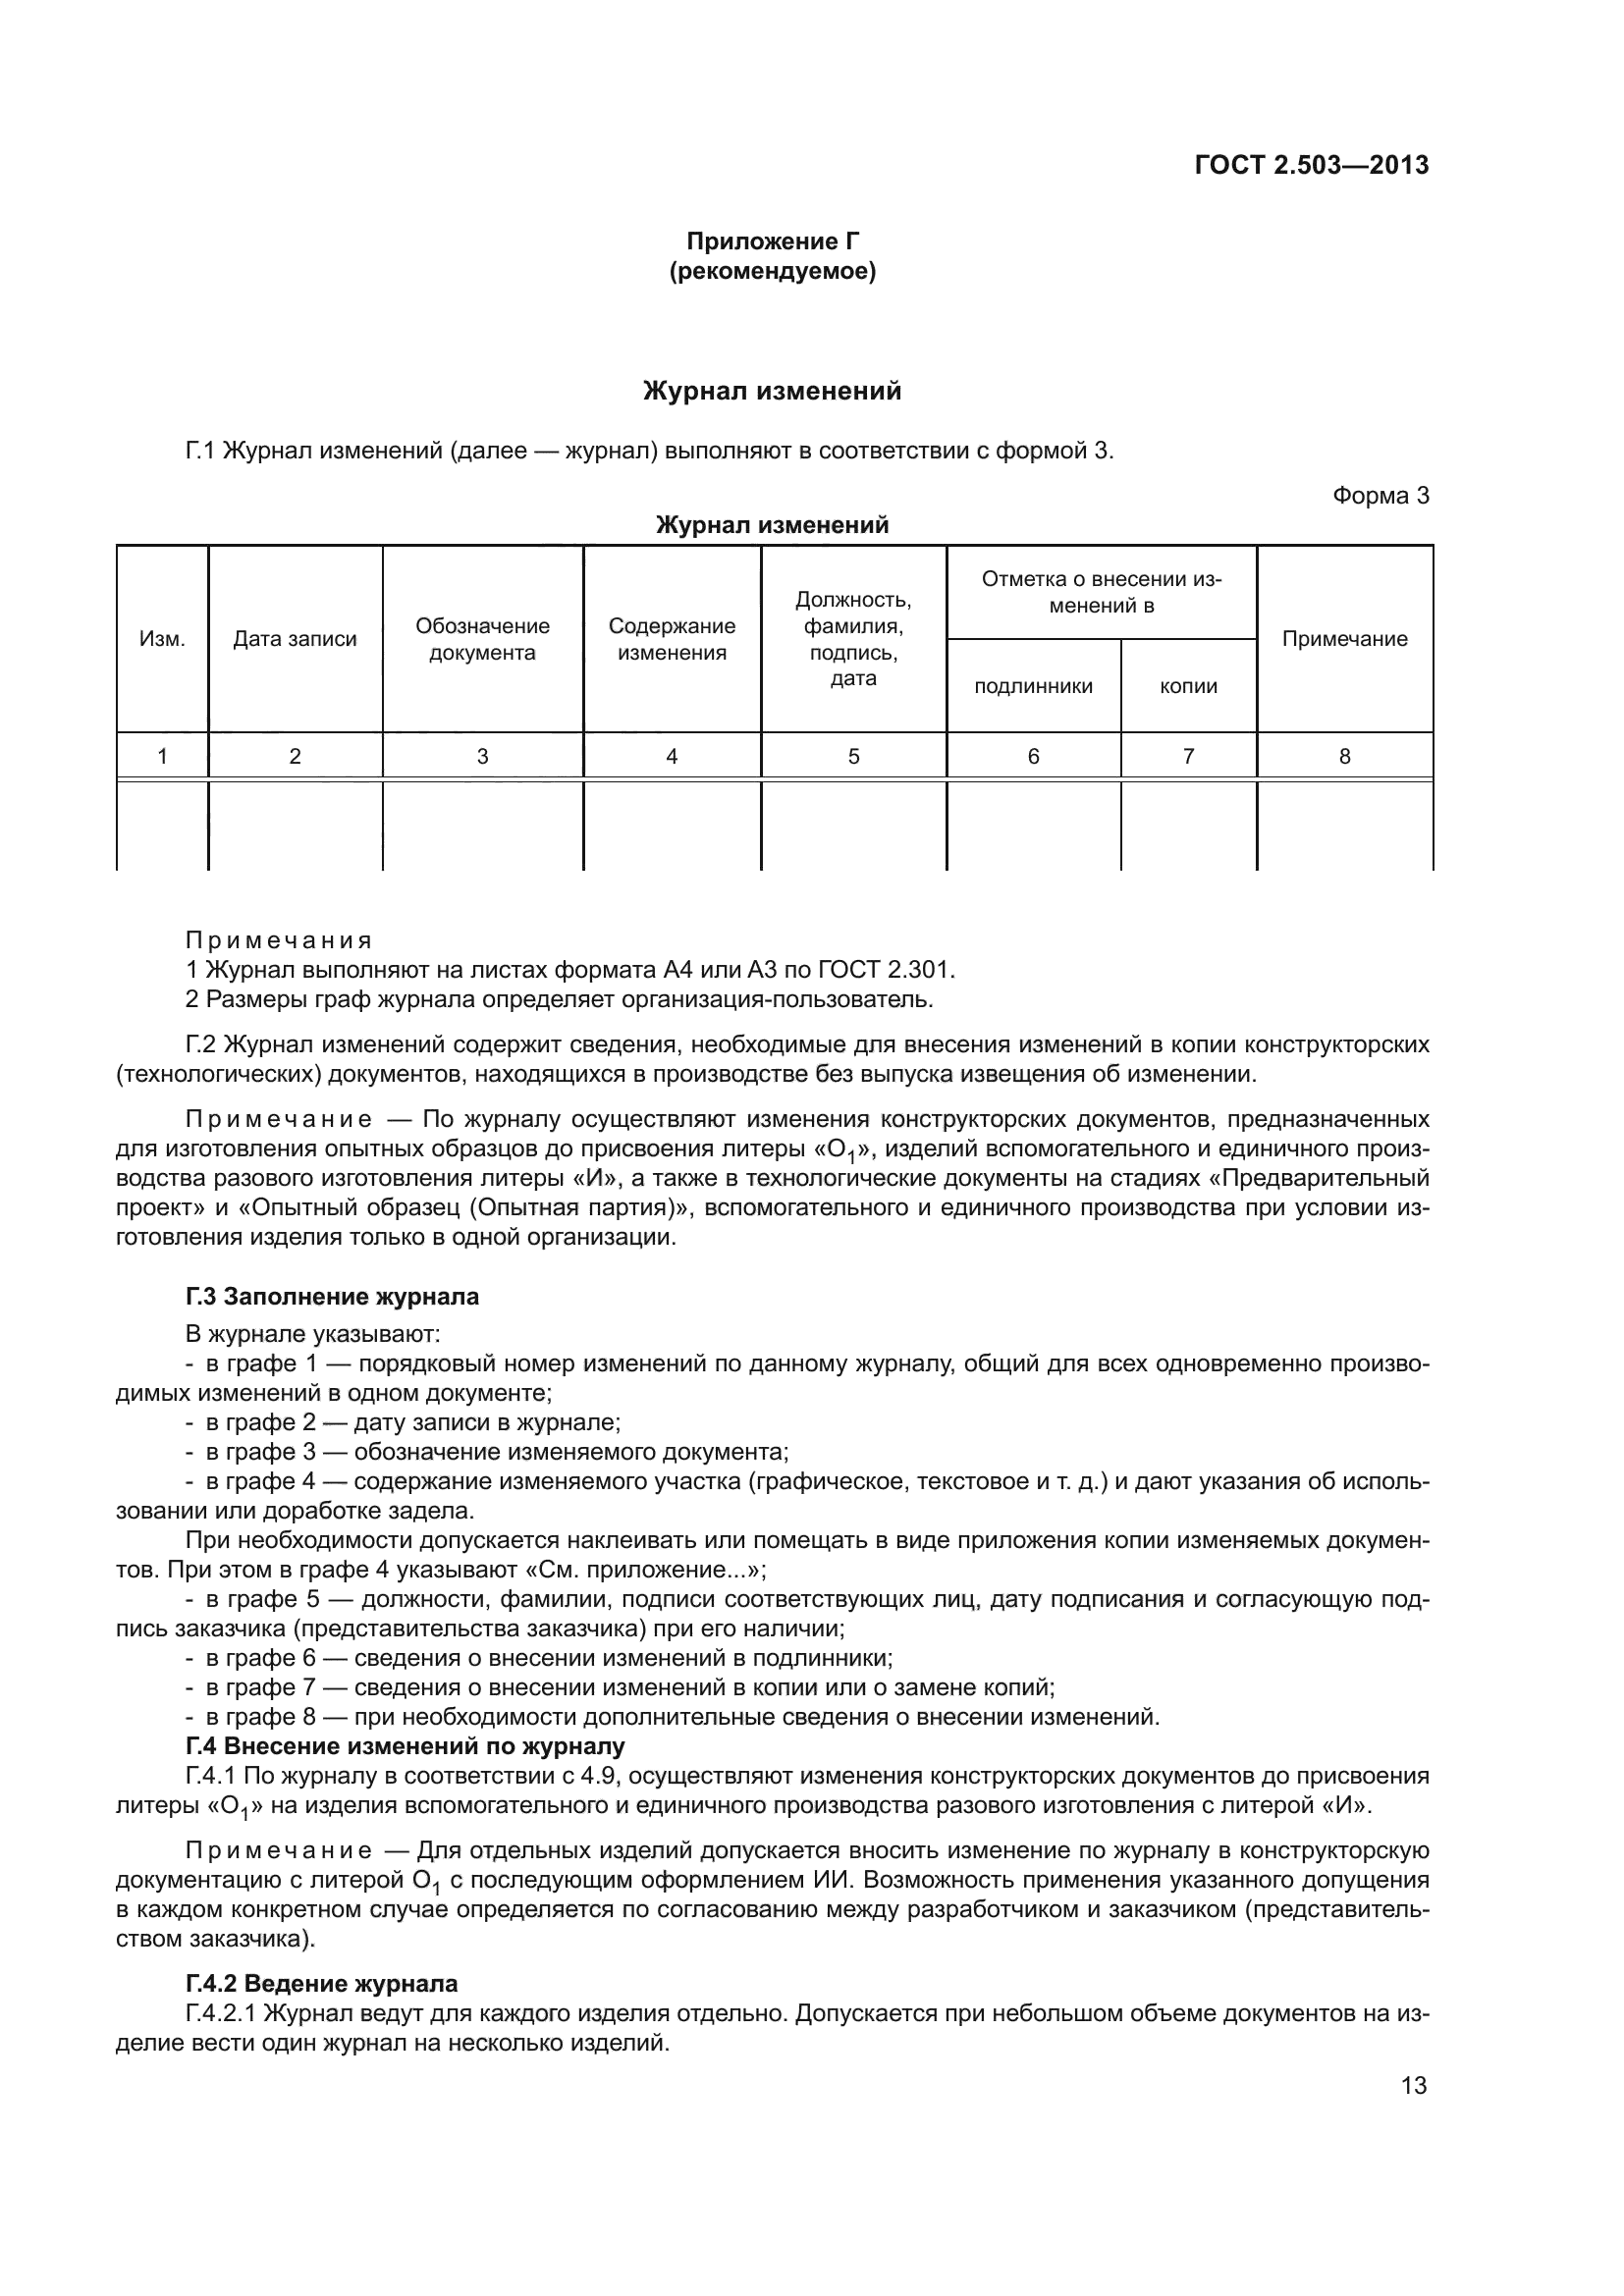 Правила внесение изменений в документацию